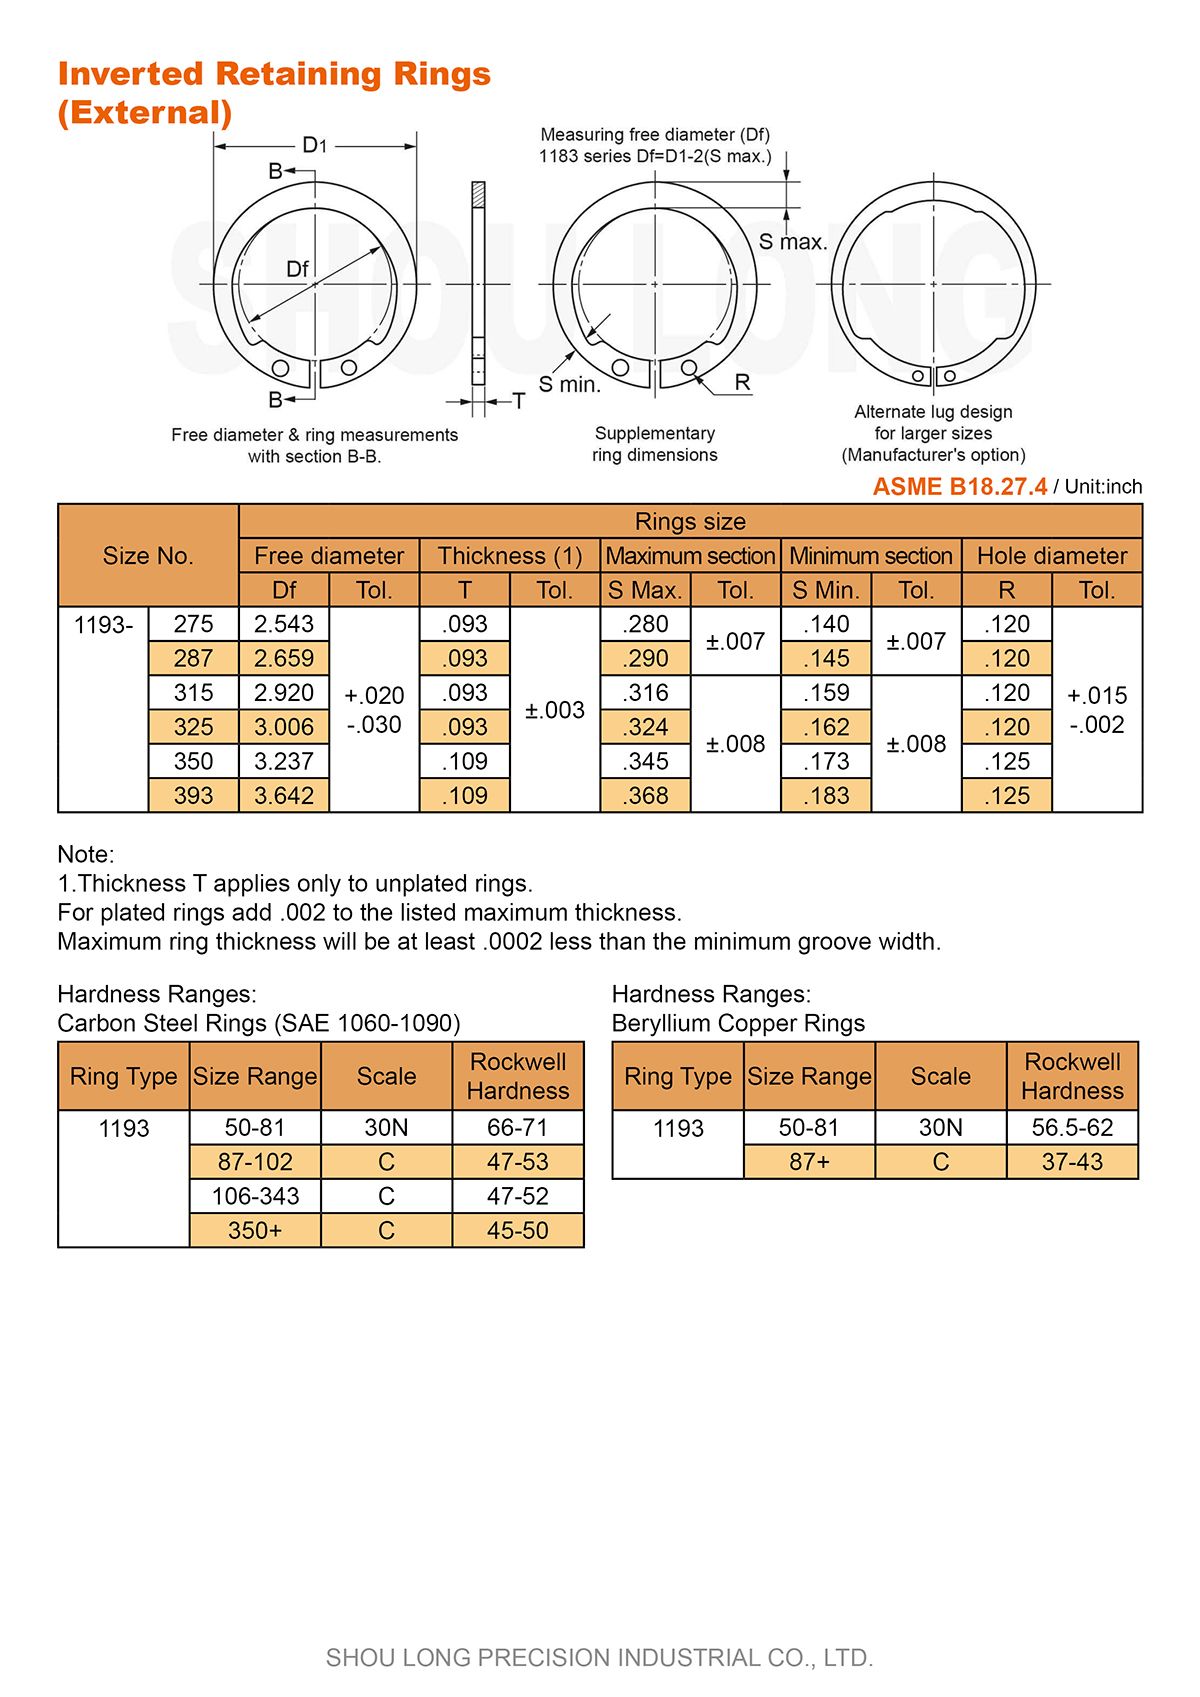 Спецификация дюймовых инвертированных удерживающих колец для вала ASME/ANSI B18.27.4 - 2